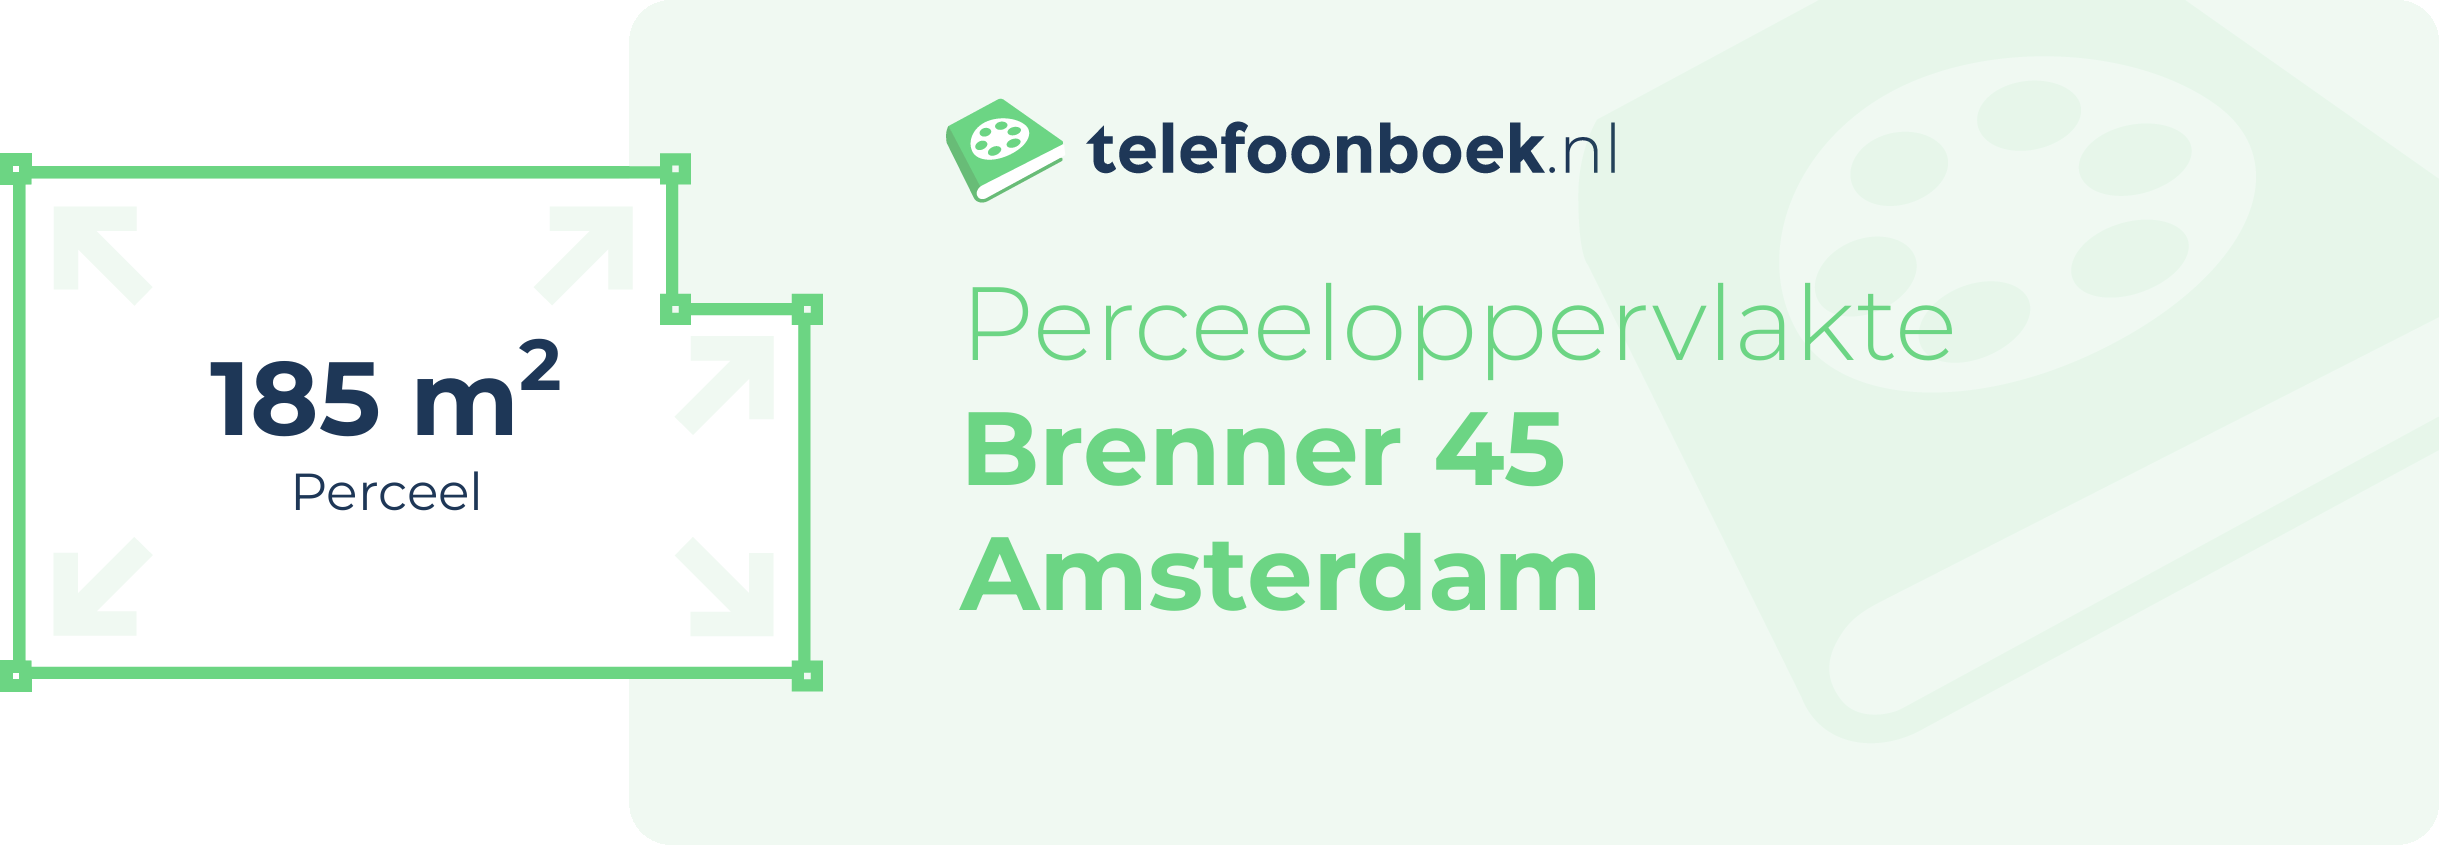 Perceeloppervlakte Brenner 45 Amsterdam